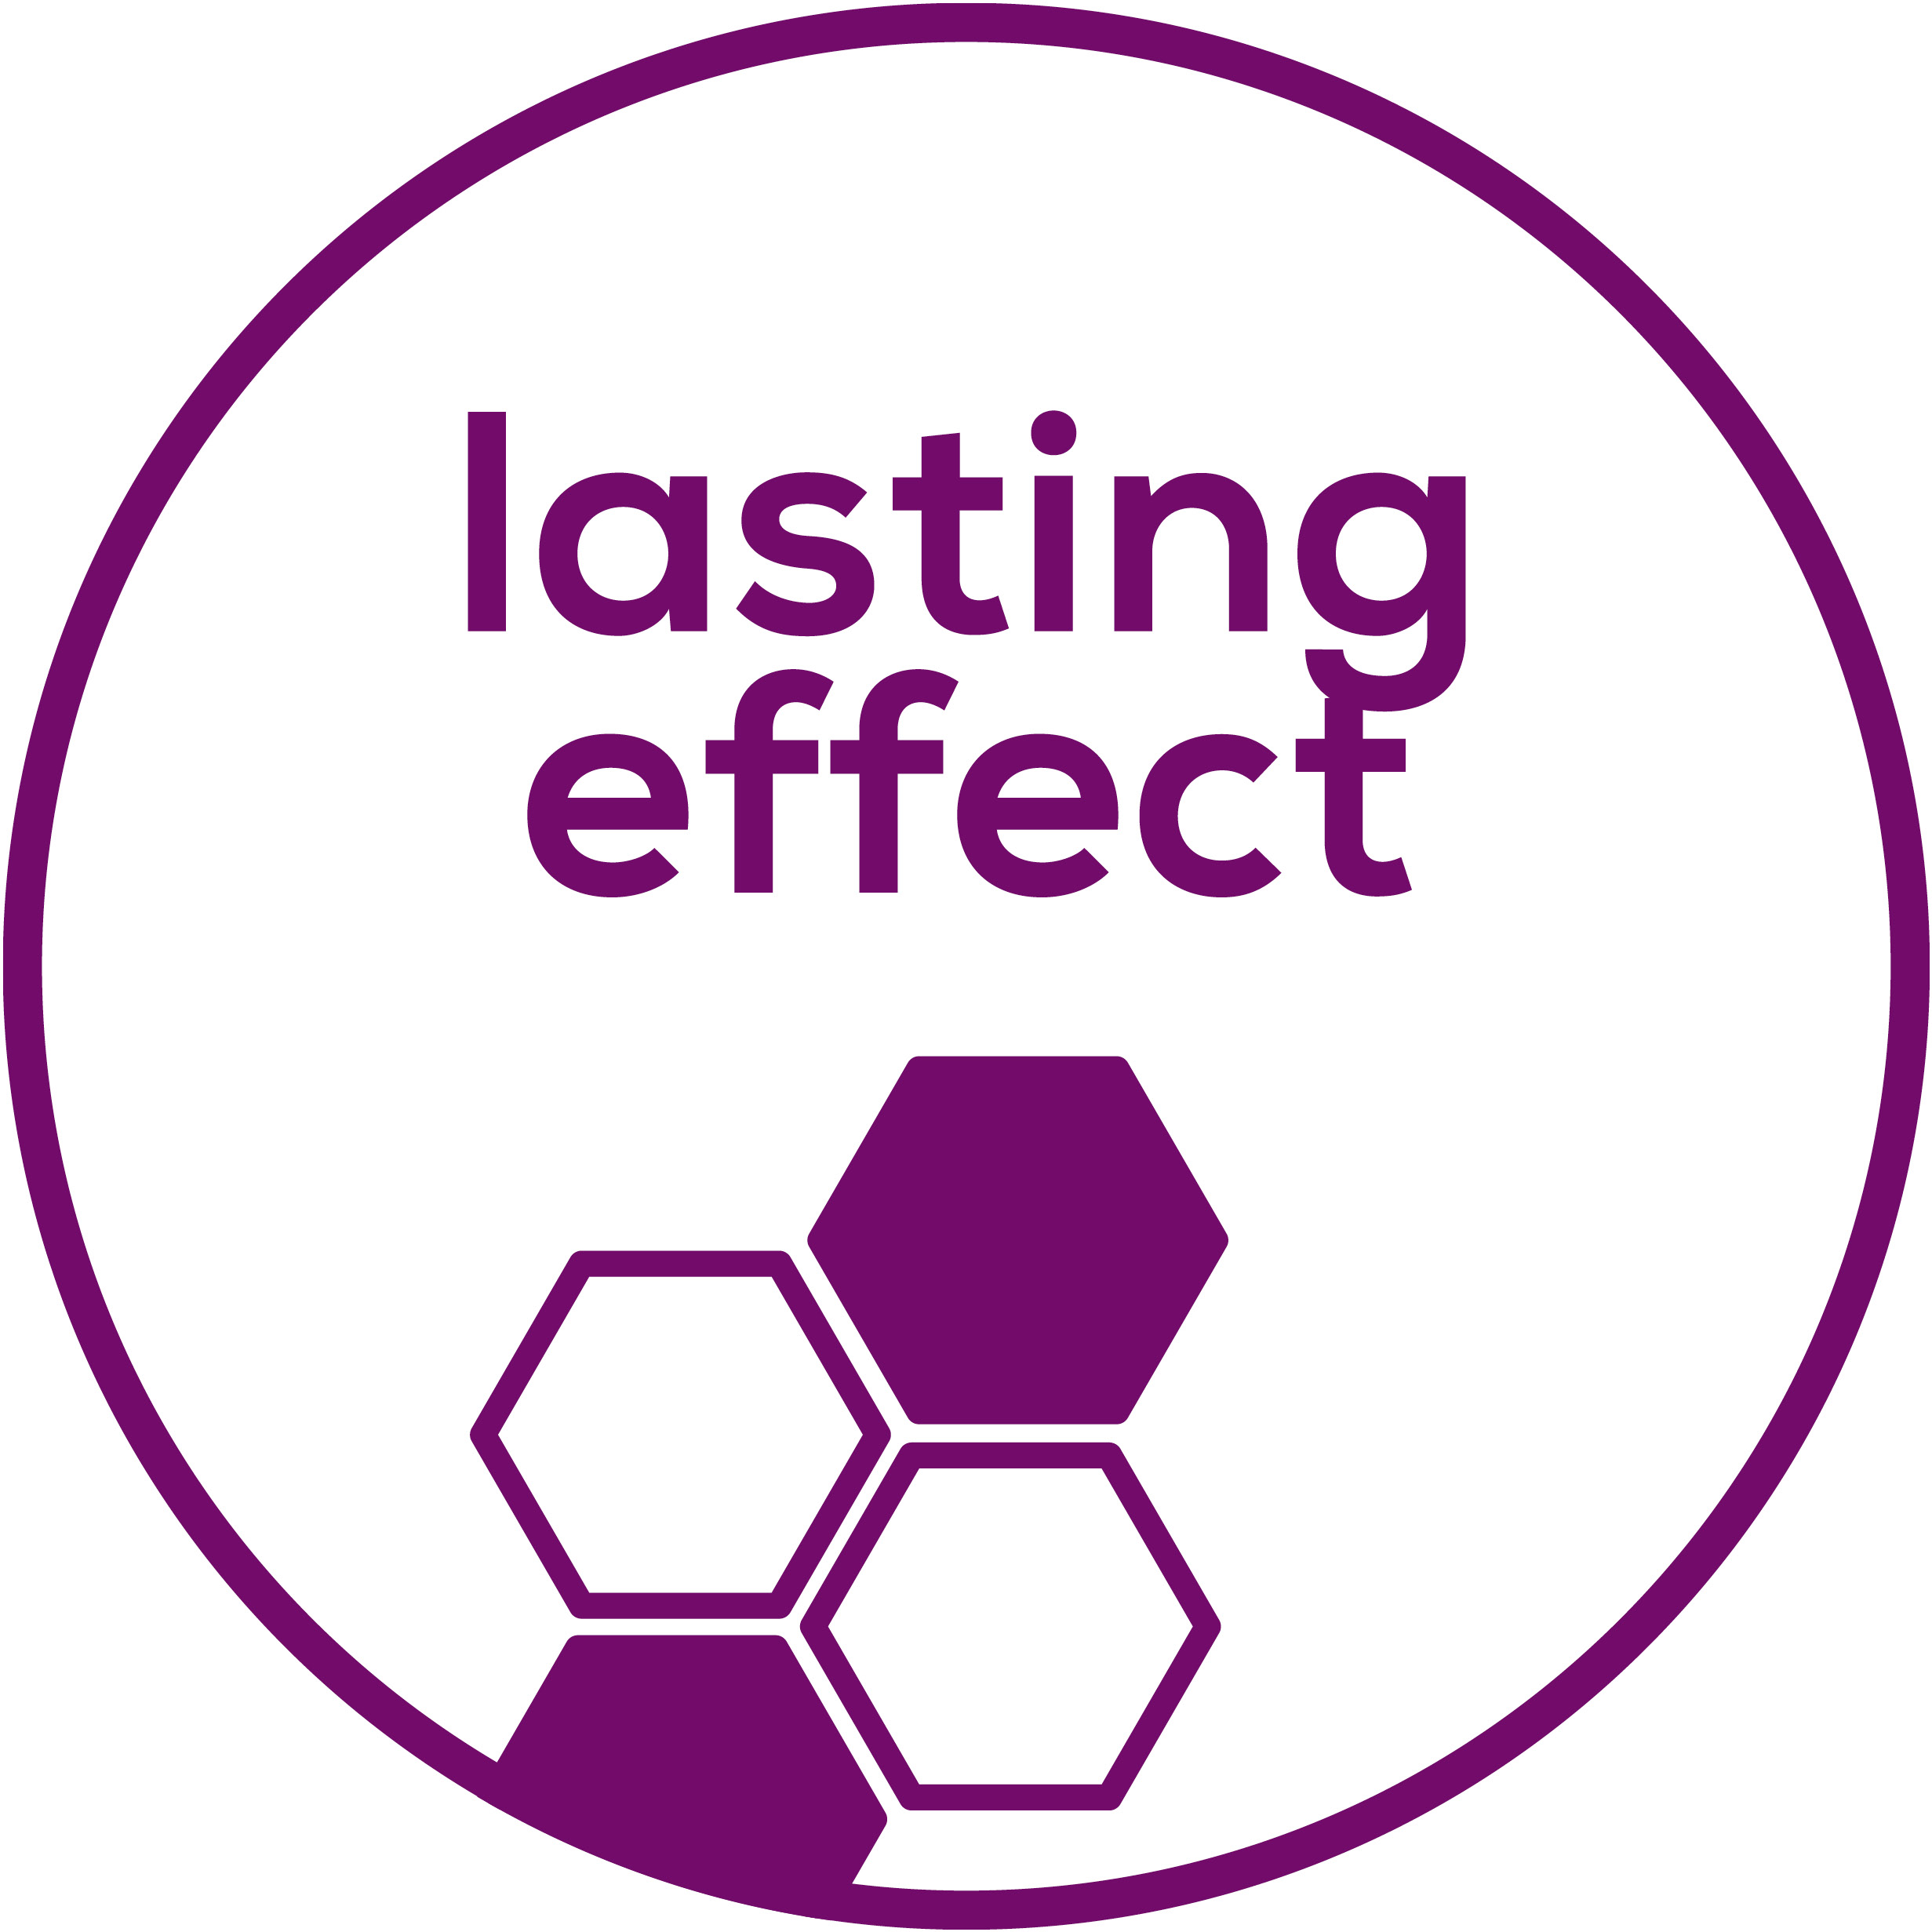 Lasting effect